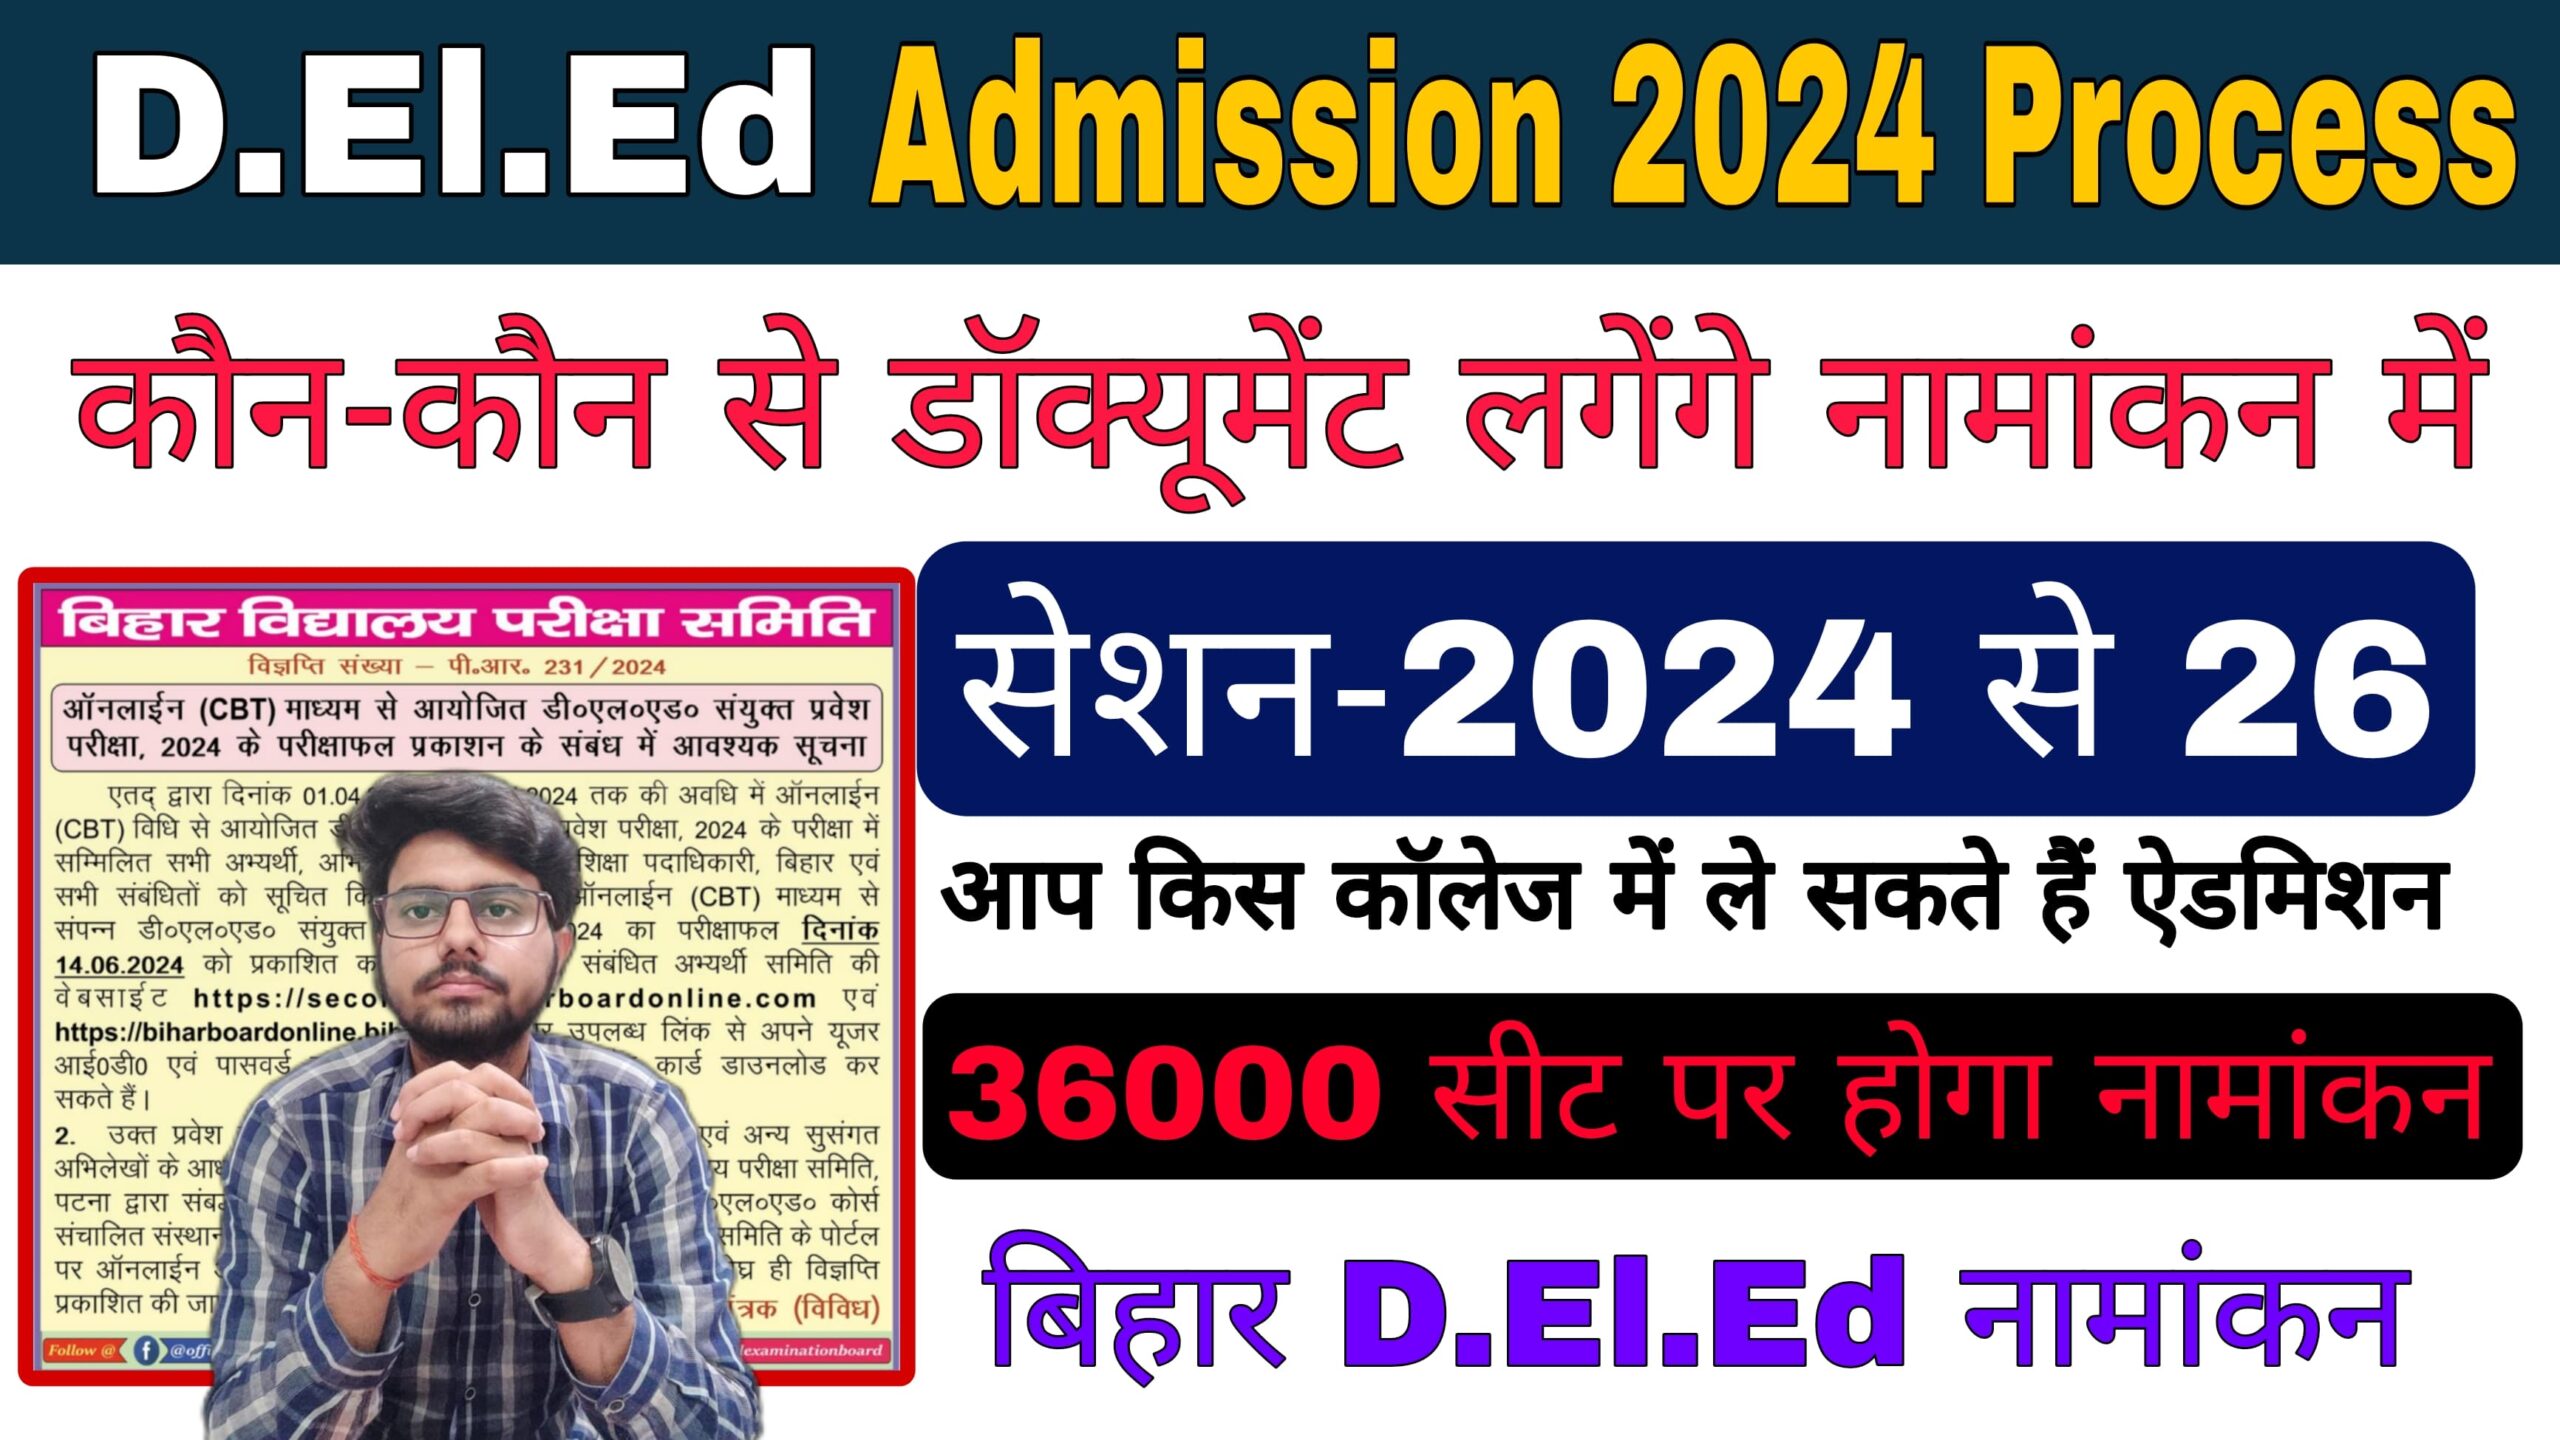 bihar deled admission 2024